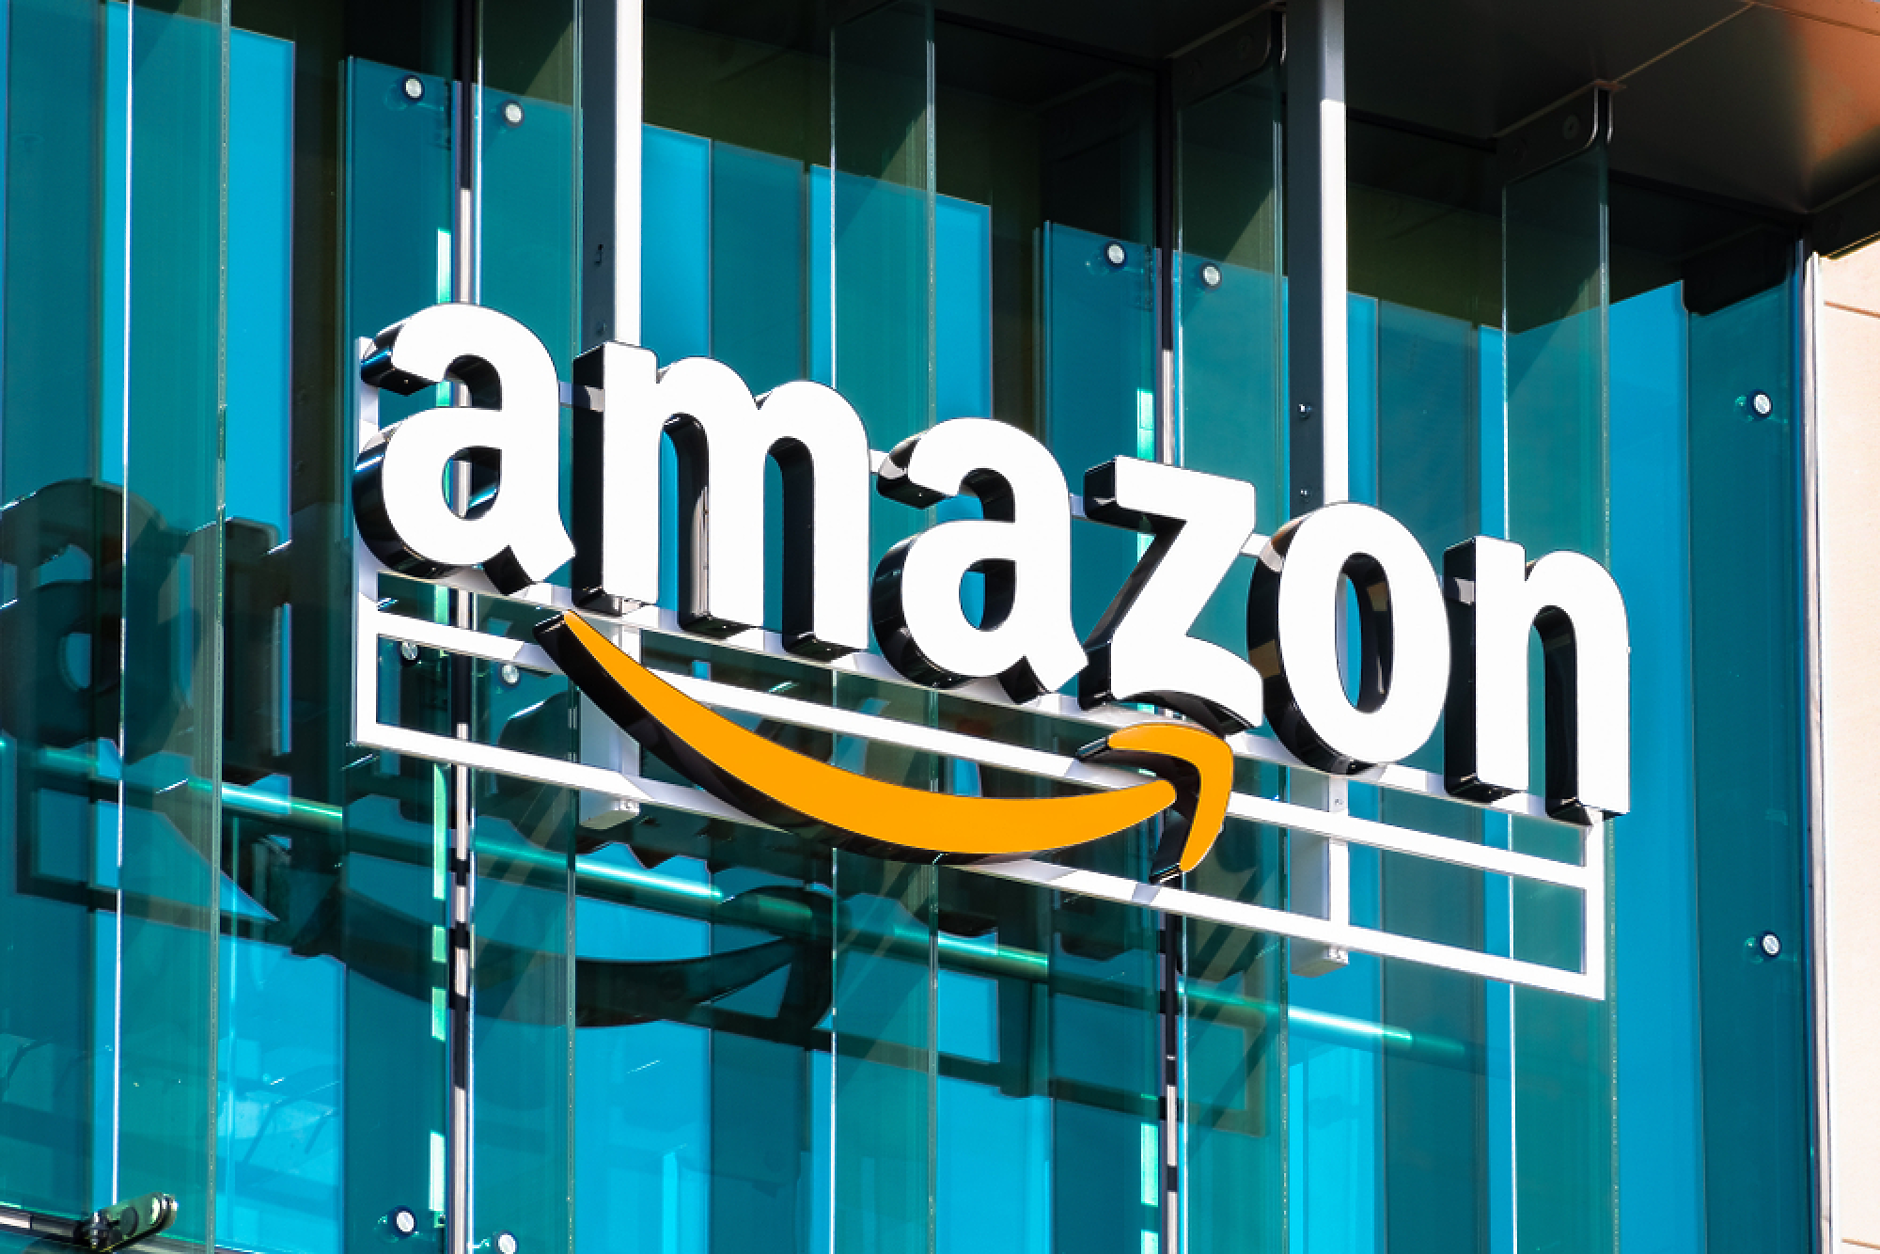 Amazon е наказвала собствените си продавачи, за да ограничи обхвата на Walmart, твърди ФТК